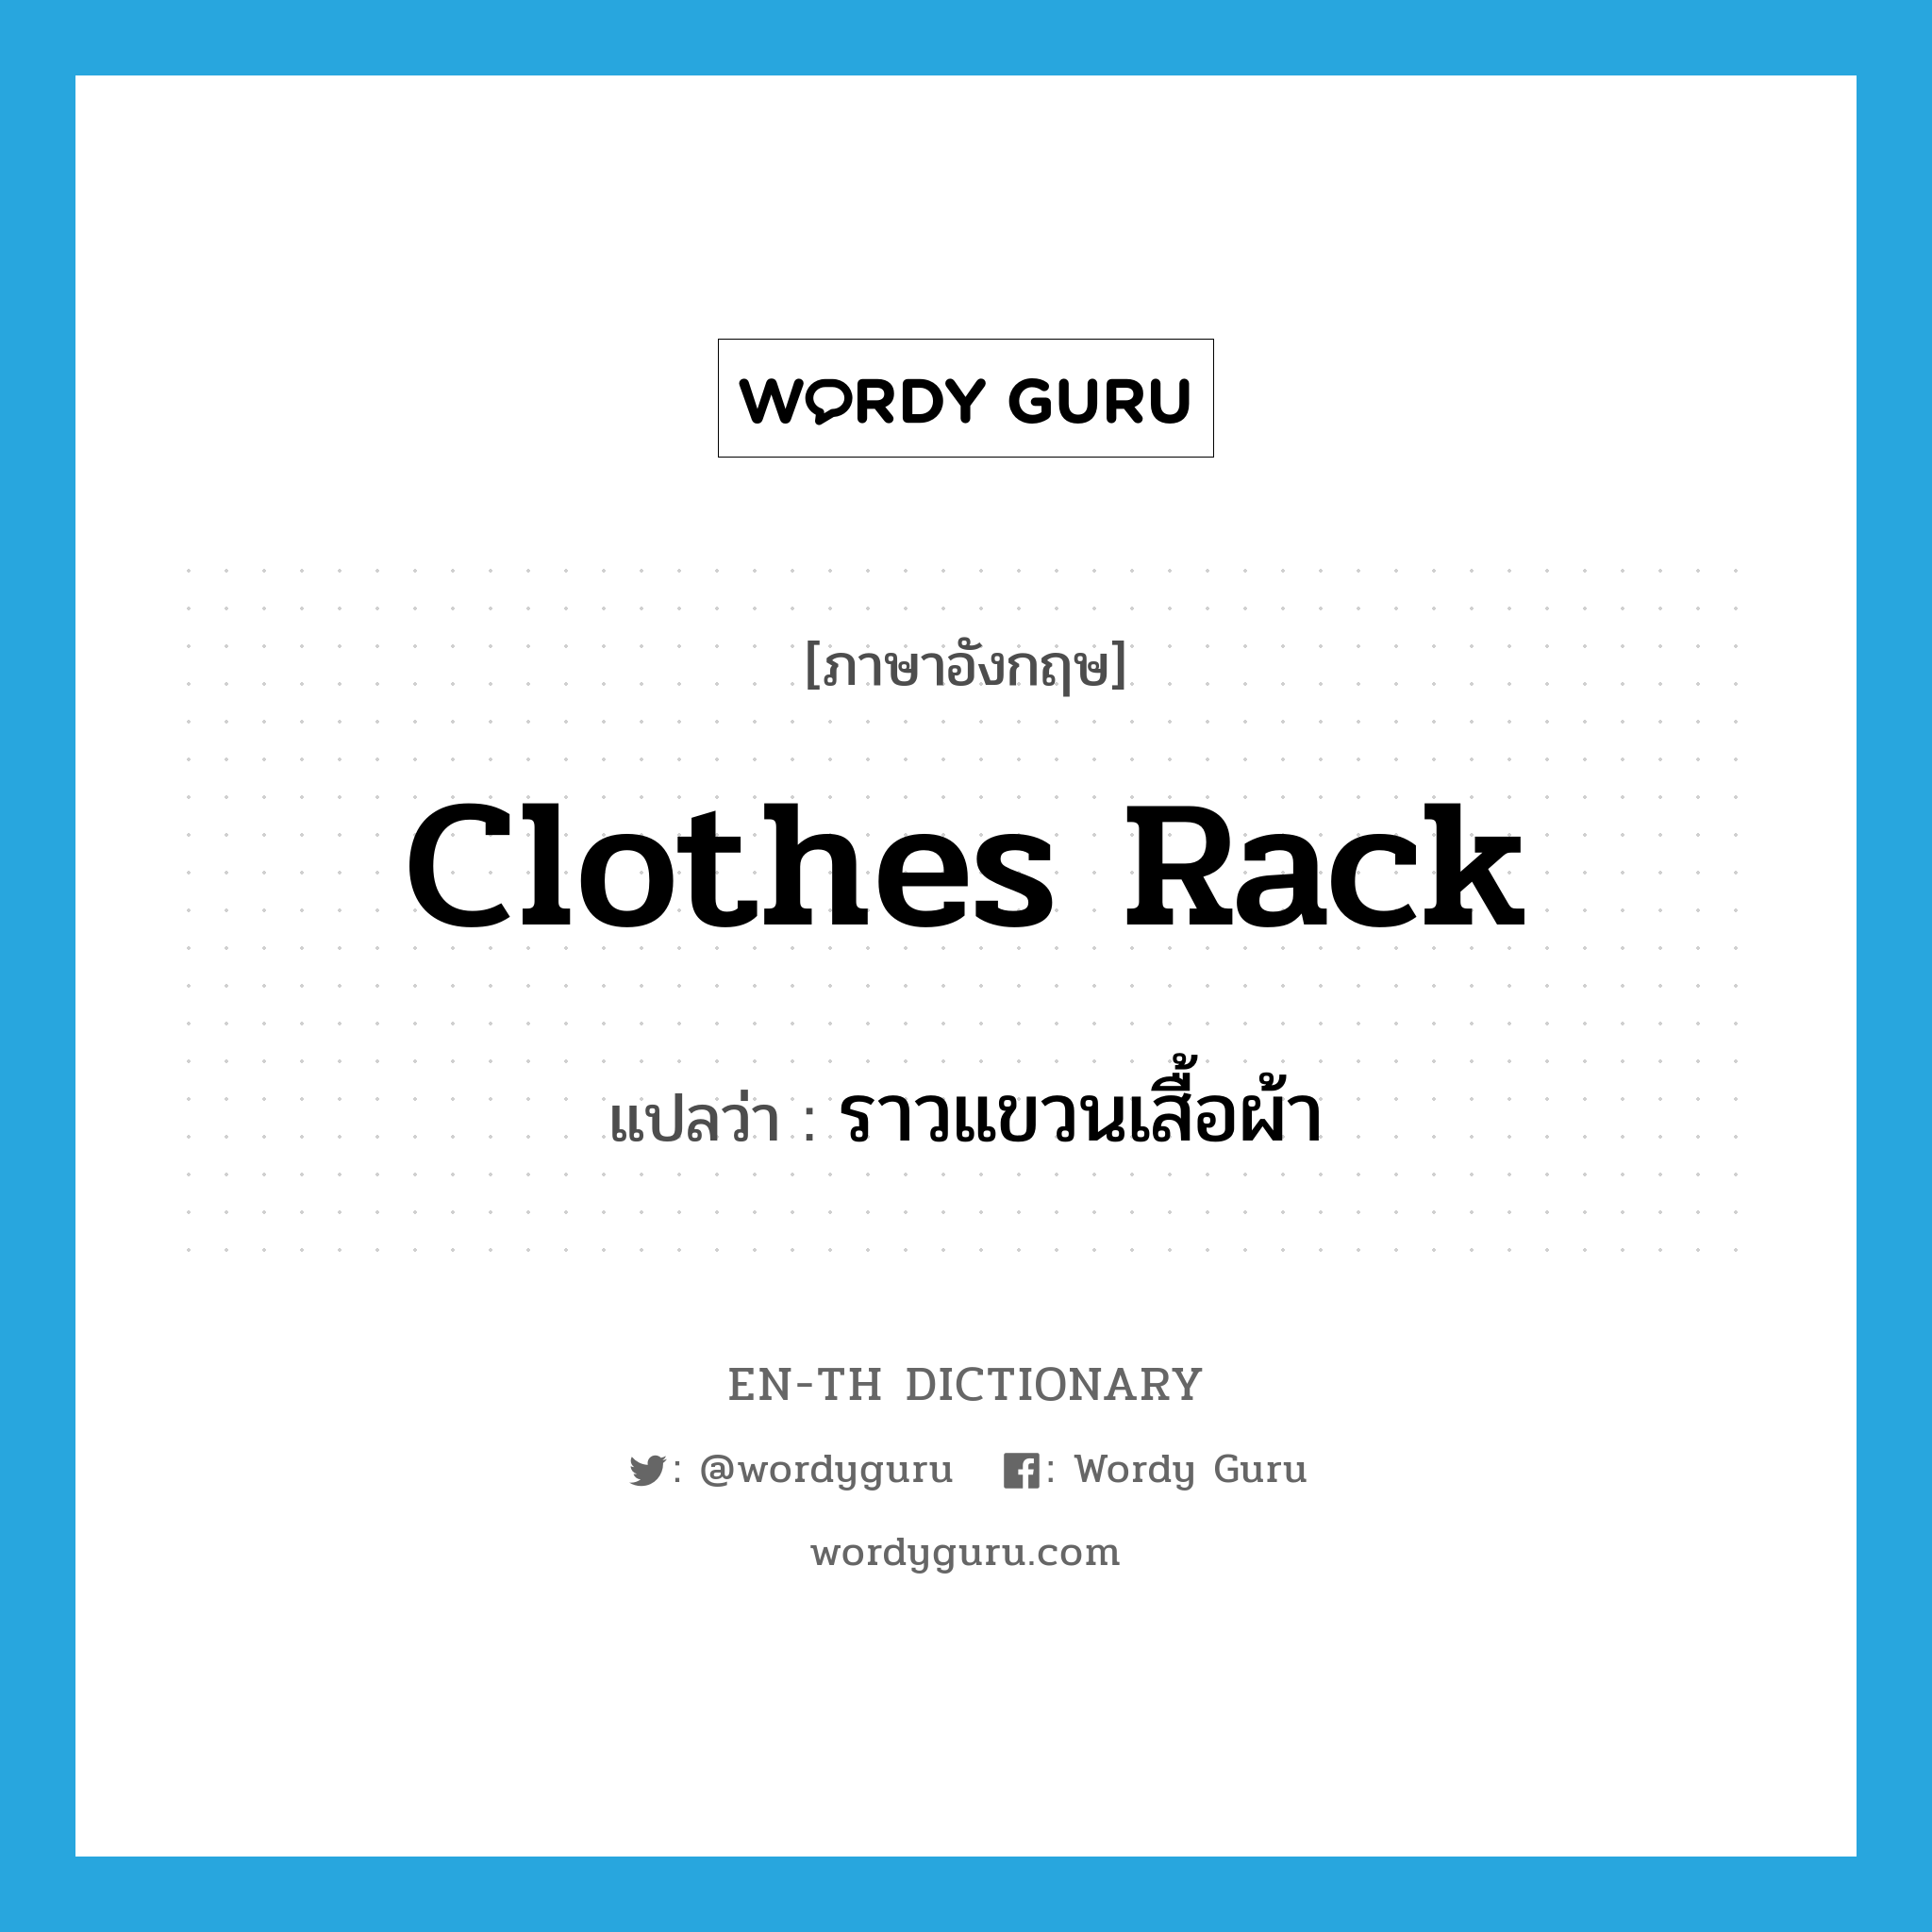 clothes rack แปลว่า?, คำศัพท์ภาษาอังกฤษ clothes rack แปลว่า ราวแขวนเสื้อผ้า ประเภท N หมวด N